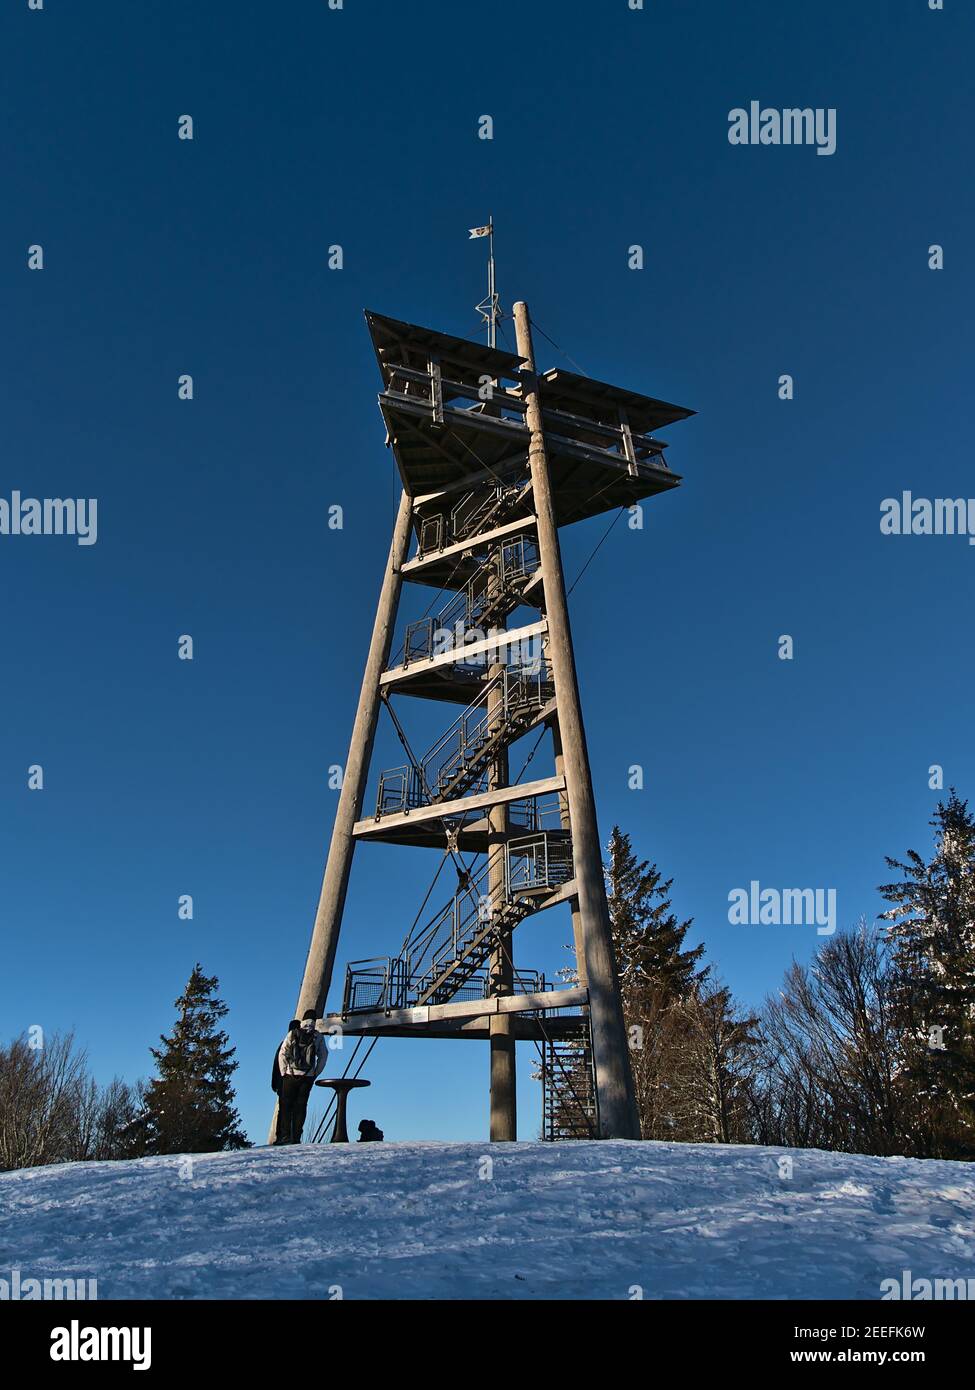 Vista de la torre de observación de madera Eugen-Keidel-Turm en la cima del pico Schauinsland (1,284 m) en la cordillera de la Selva Negra, Alemania en la temporada de invierno. Foto de stock